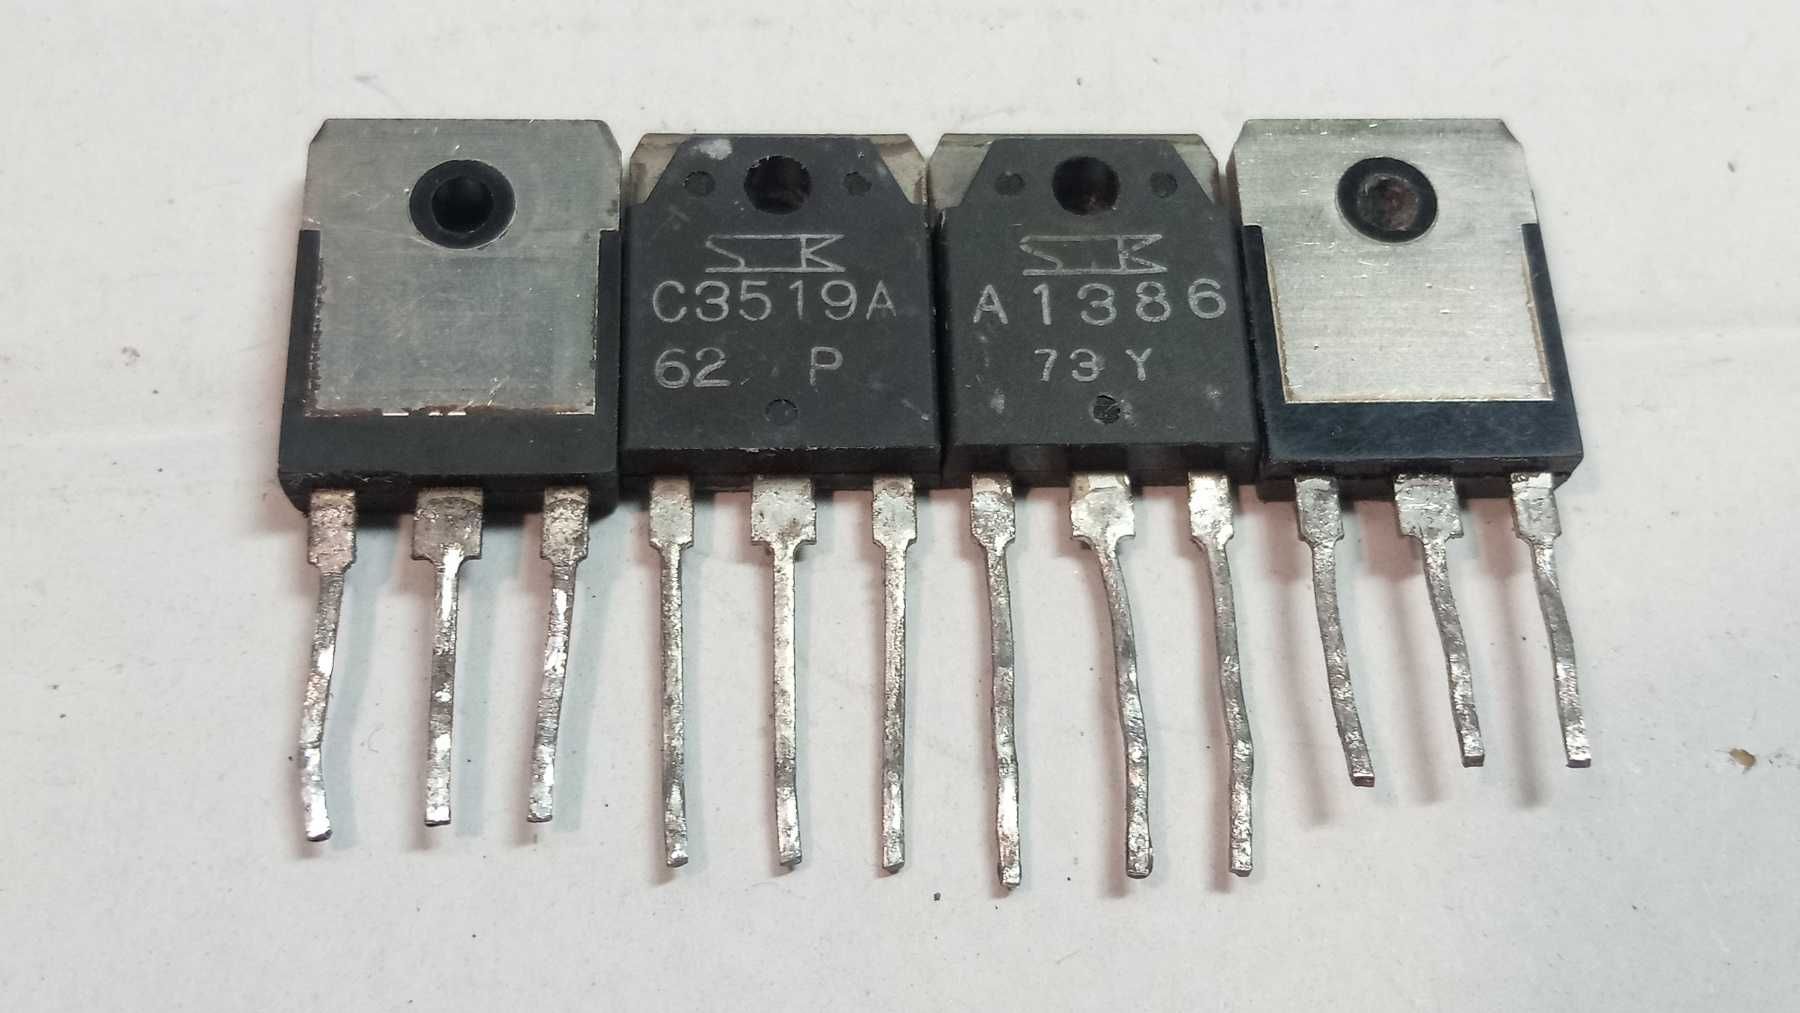 Біполярні транзистори 2SA1215 2SC2921. Оригінал.